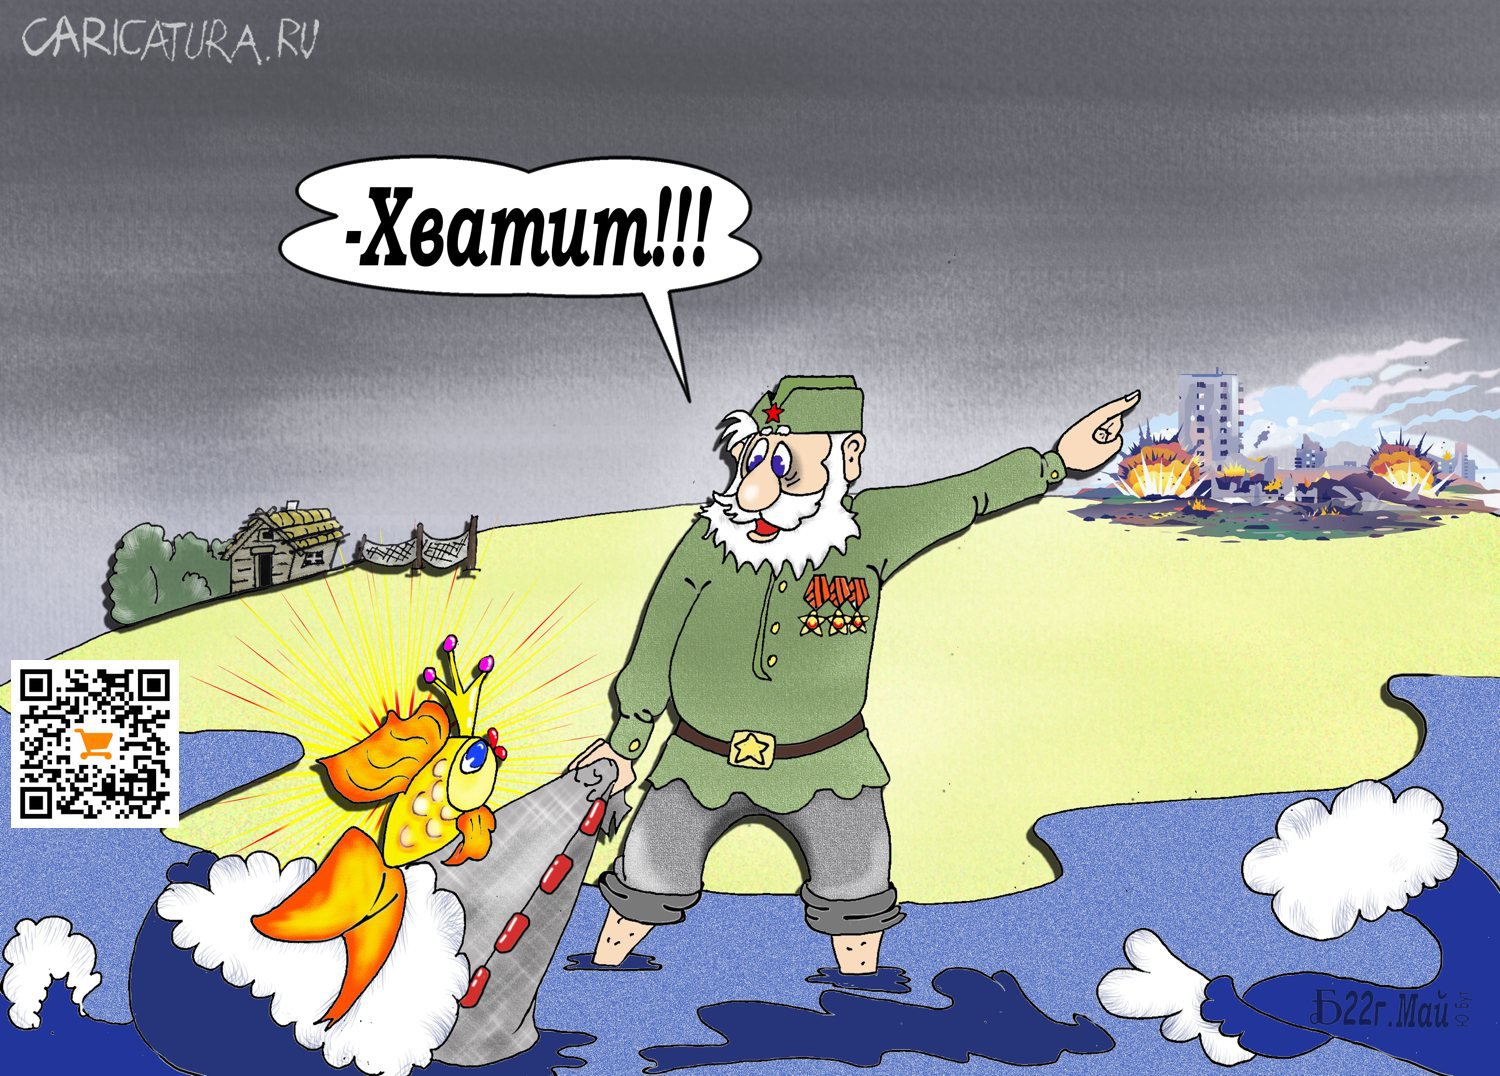 Карикатура "Про сказку ложь да...", Борис Демин